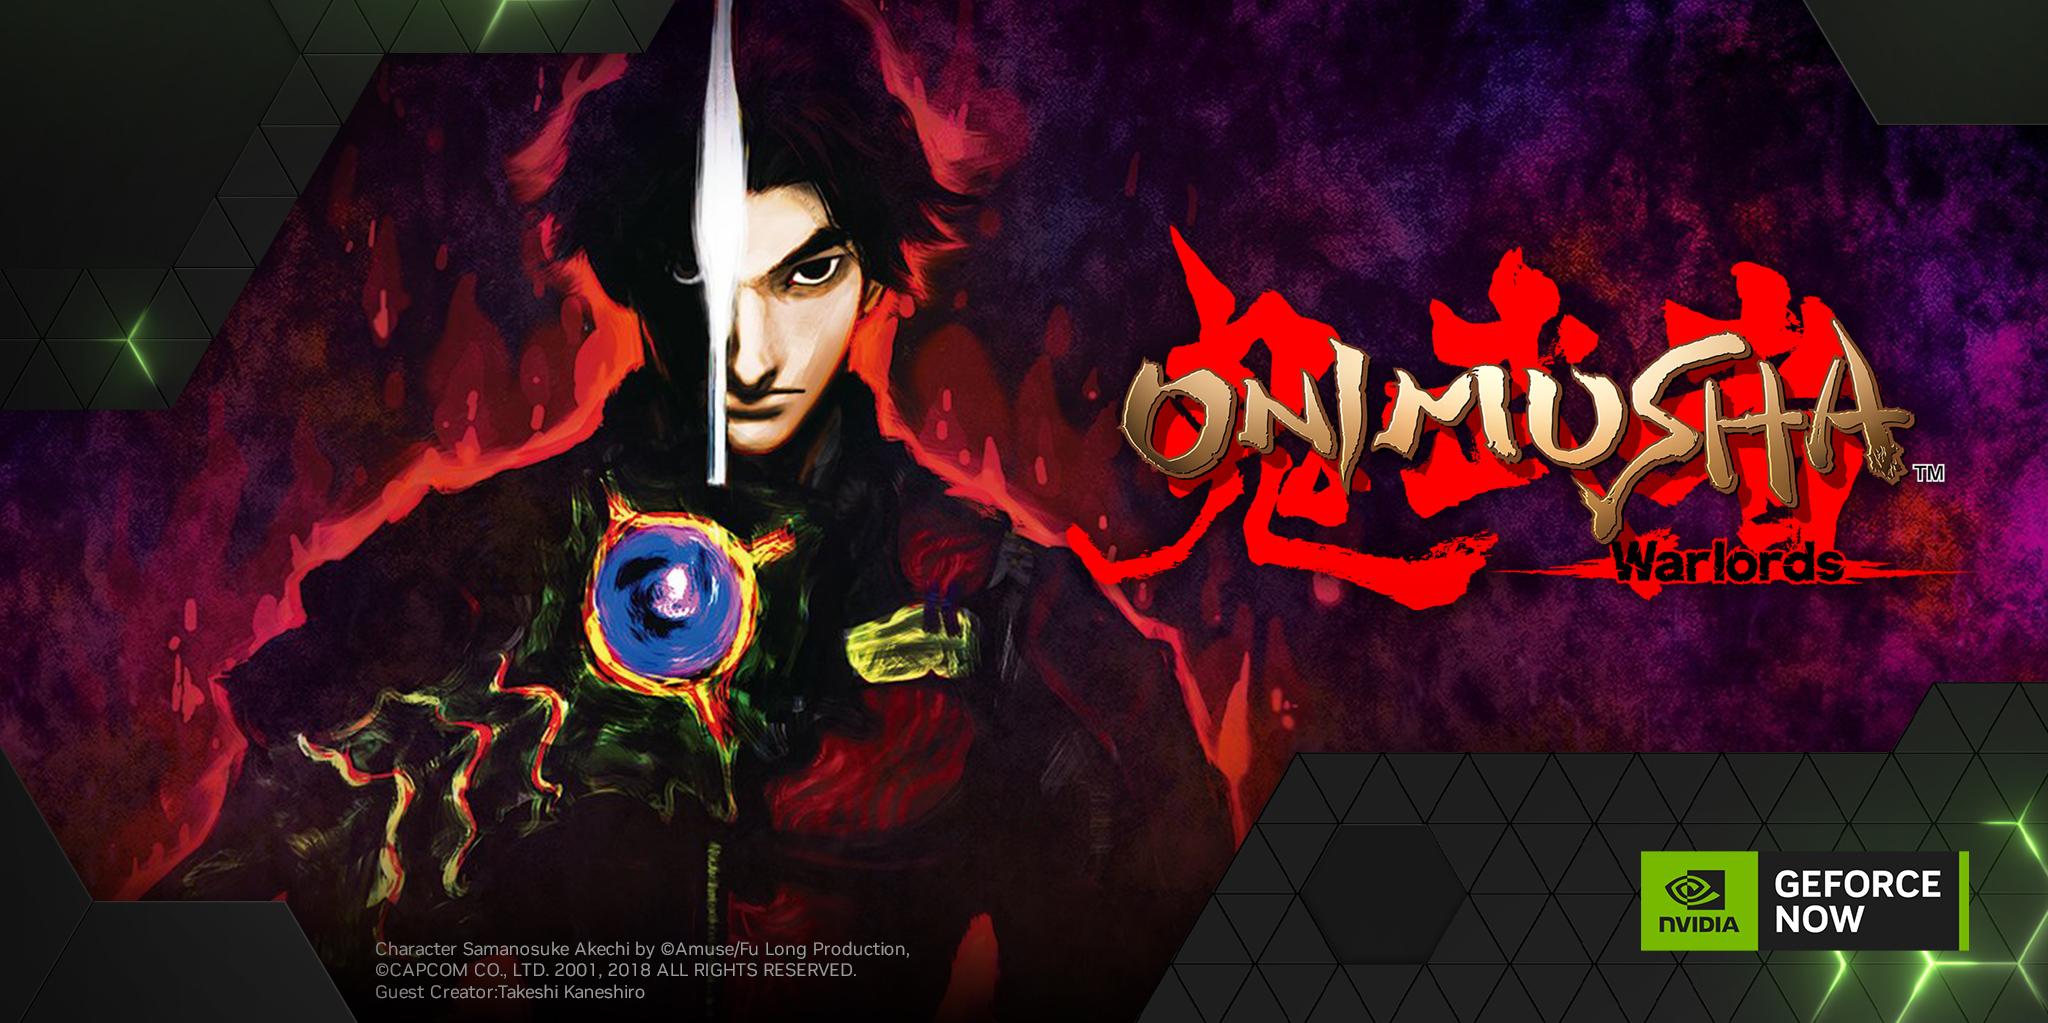 Usa On X Celebrate The Onimusha Anime Flix With